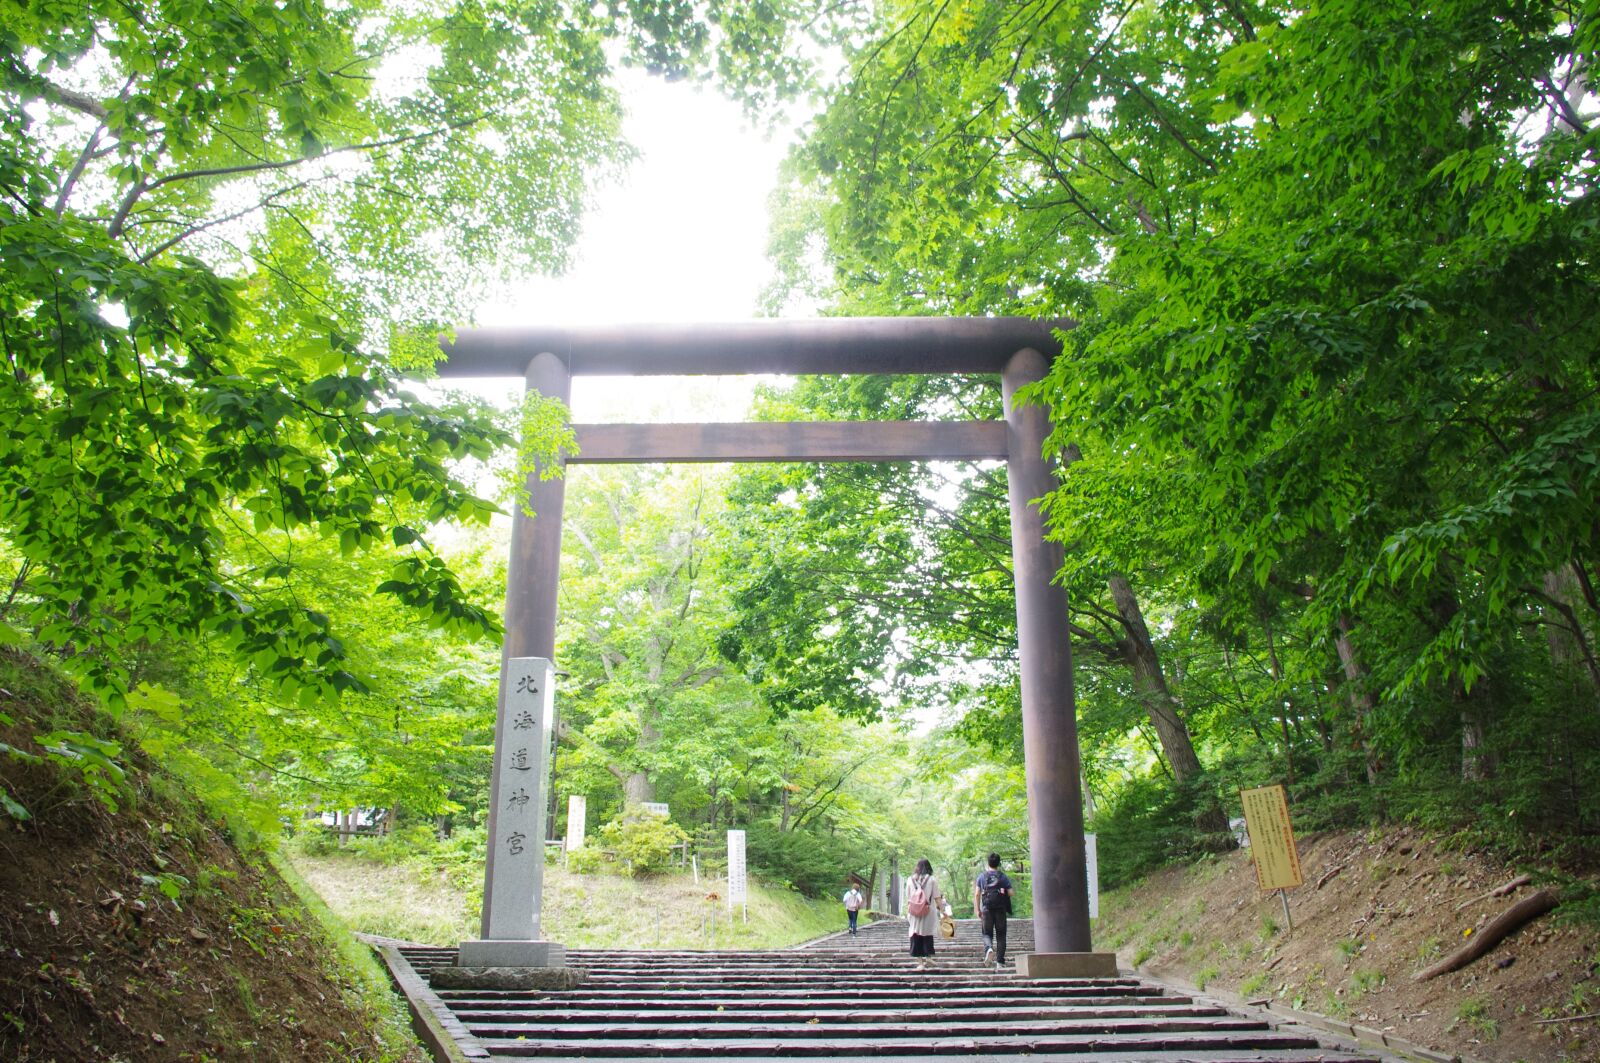 Pentax K-r sample photo. Torii, shrine, japan photography